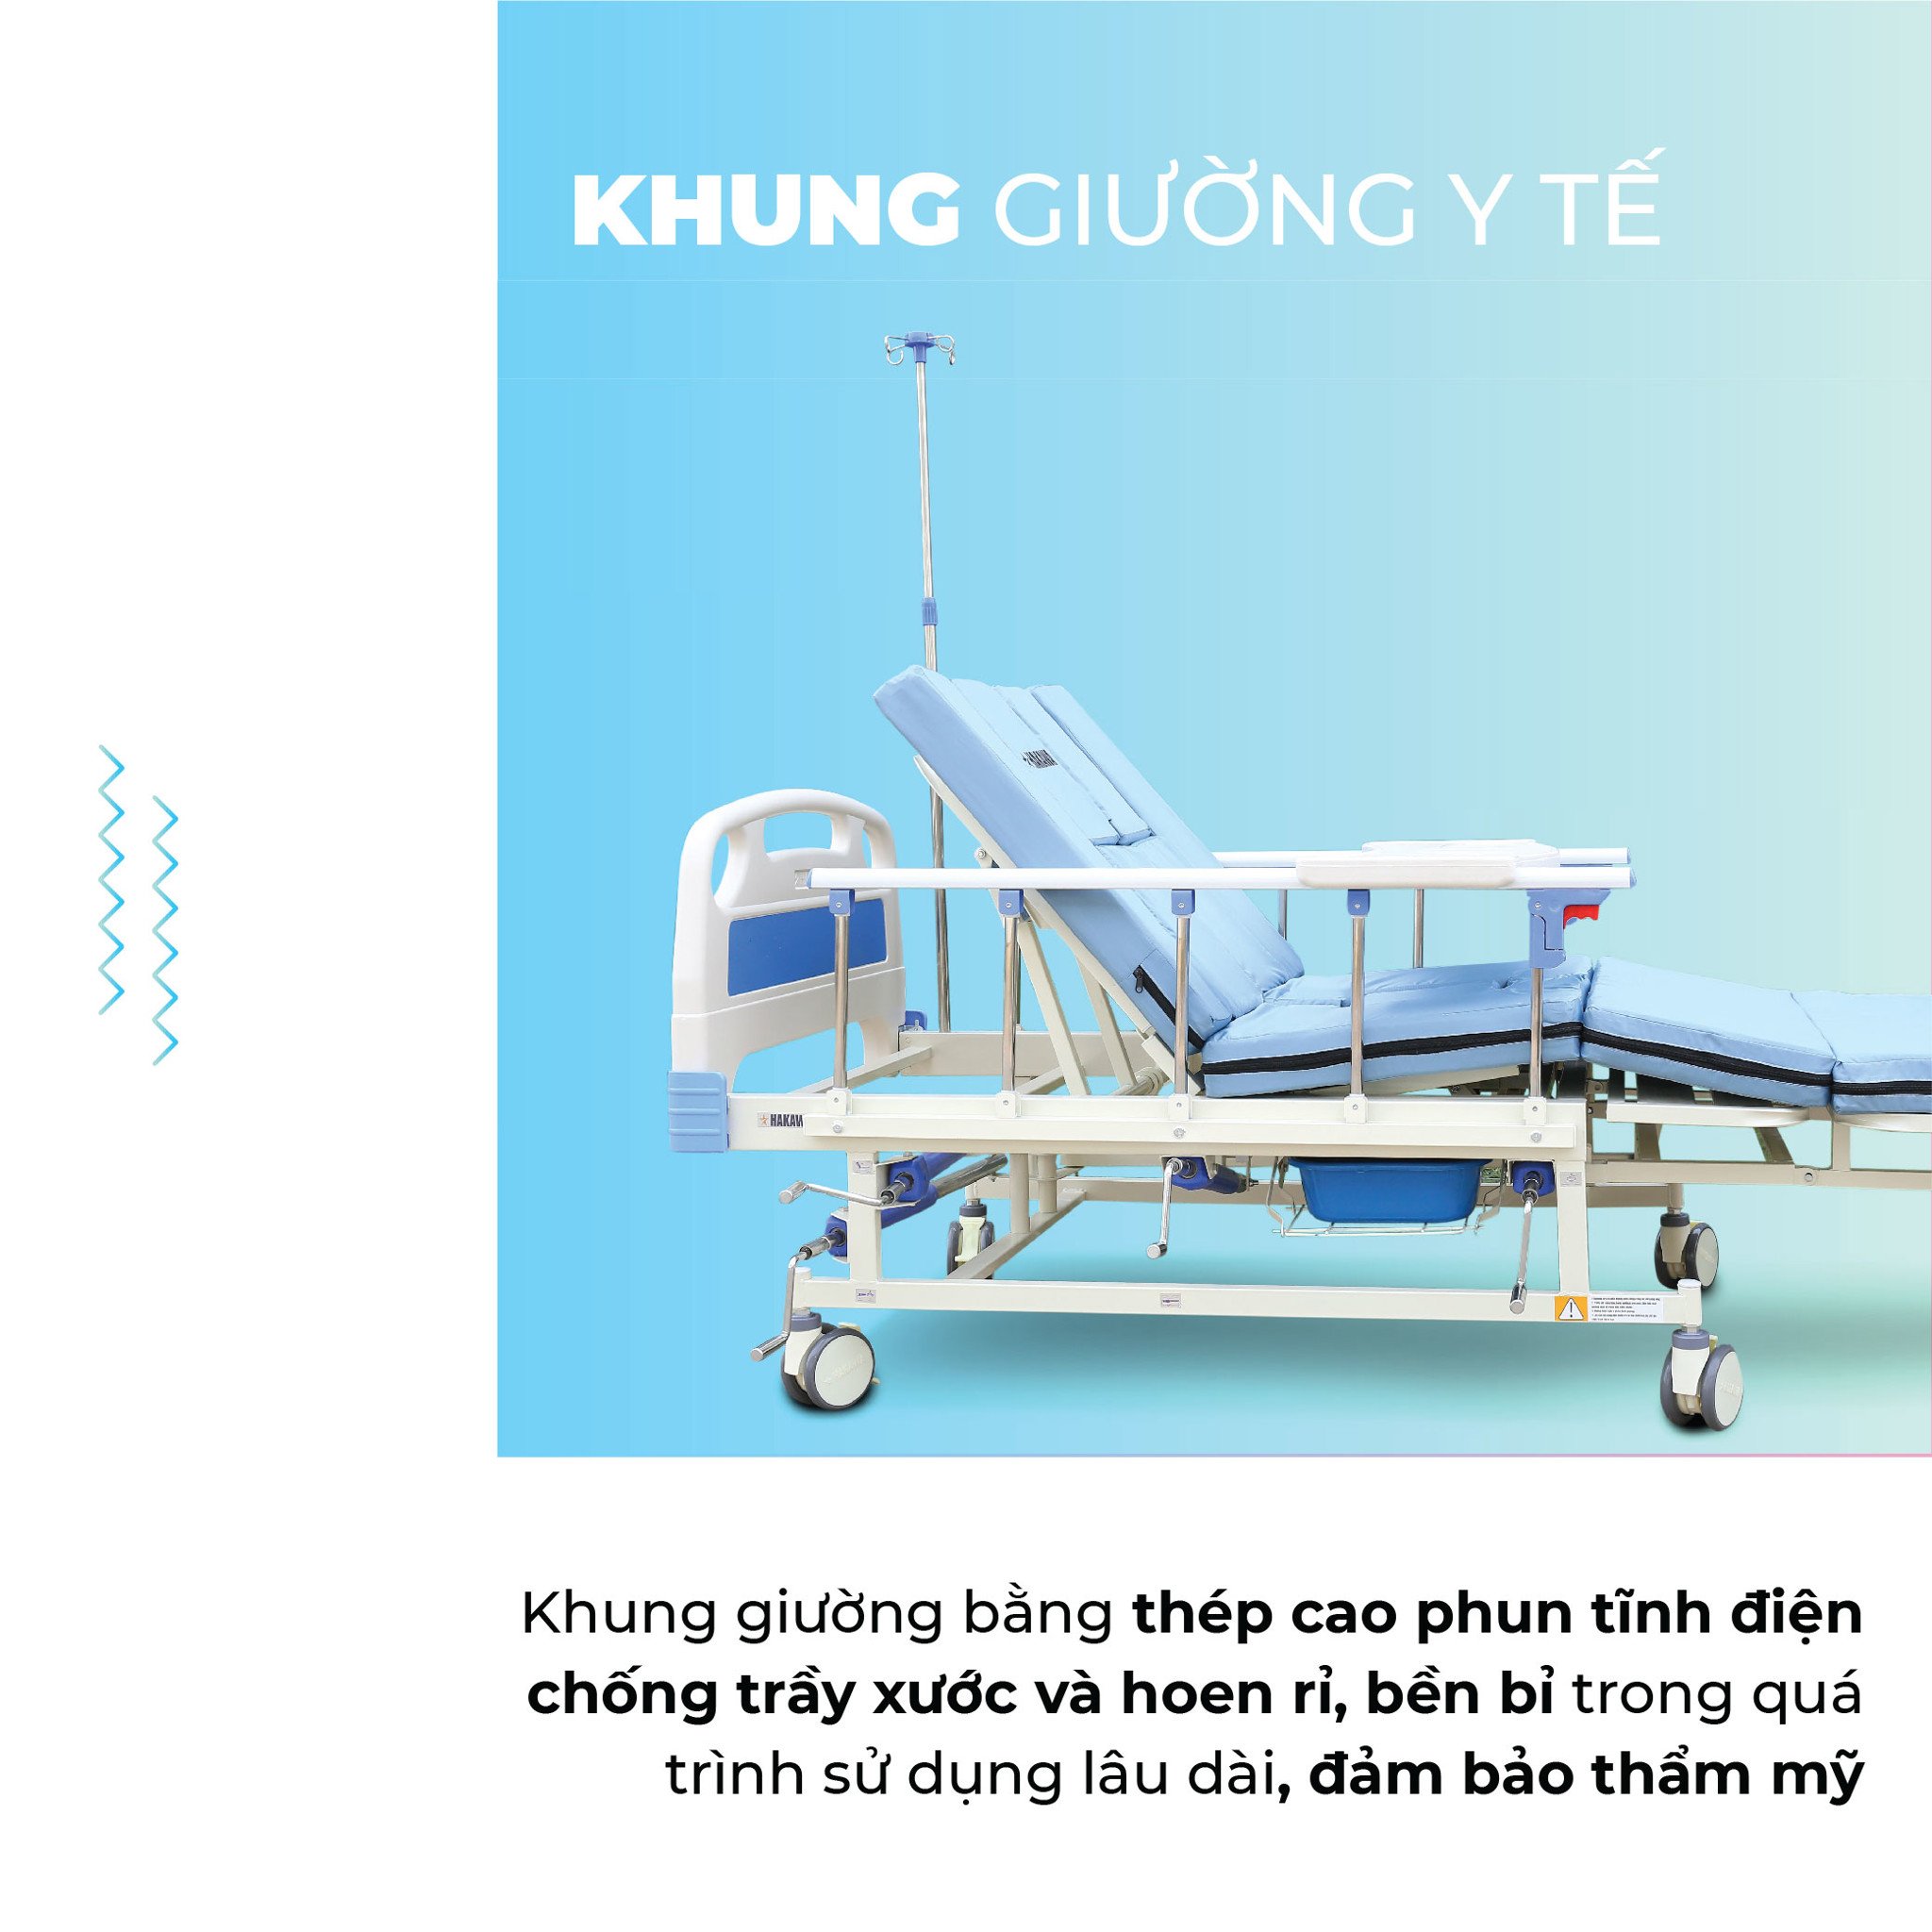 Khung giường y tế HK-D95 được làm bằng thép cao cấp phủ sơn tĩnh điện chống trầy xước, hoen rỉ đảm bảo được thẩm mỹ và độ bền bỉ trong suốt quá trình sử dụng